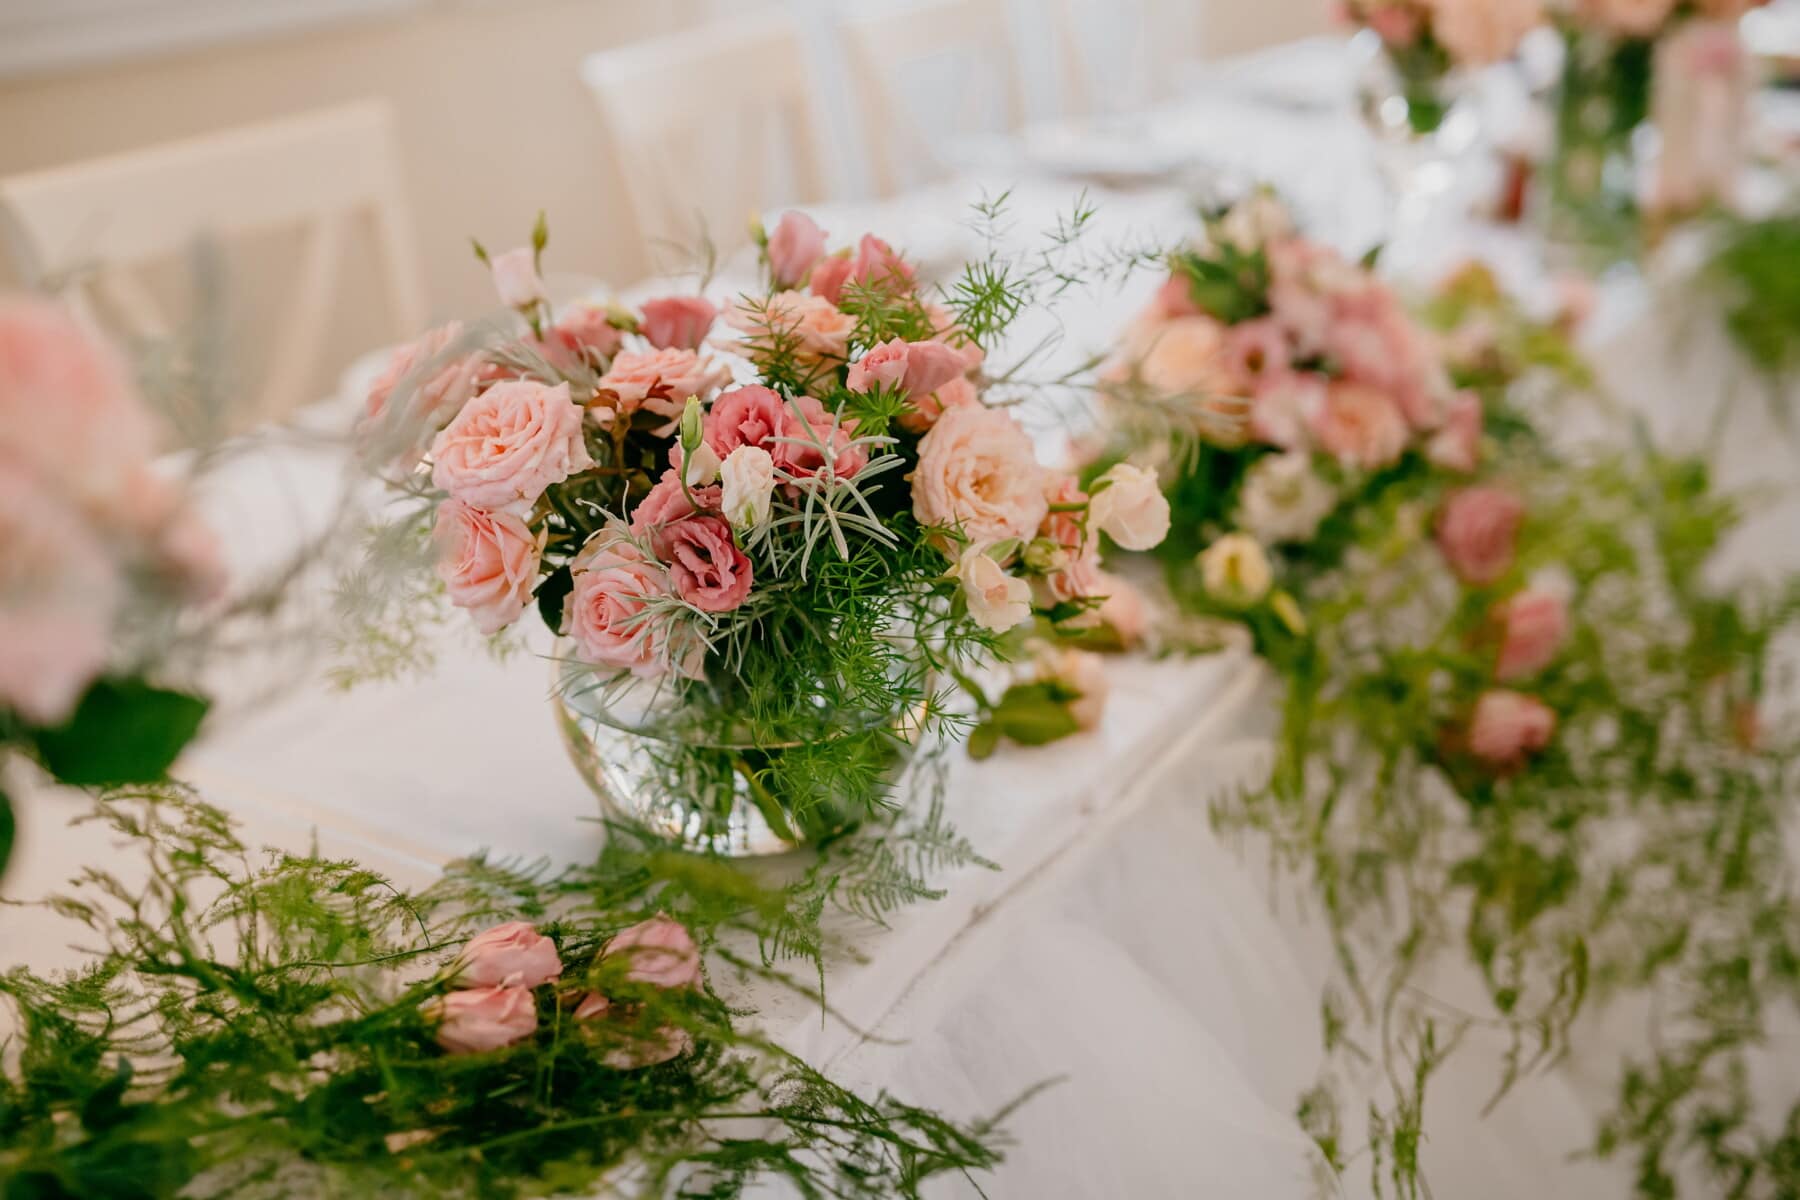 bouquet, decoration, arrangement, flower, rose, nature, romance, cluster, reception, vase